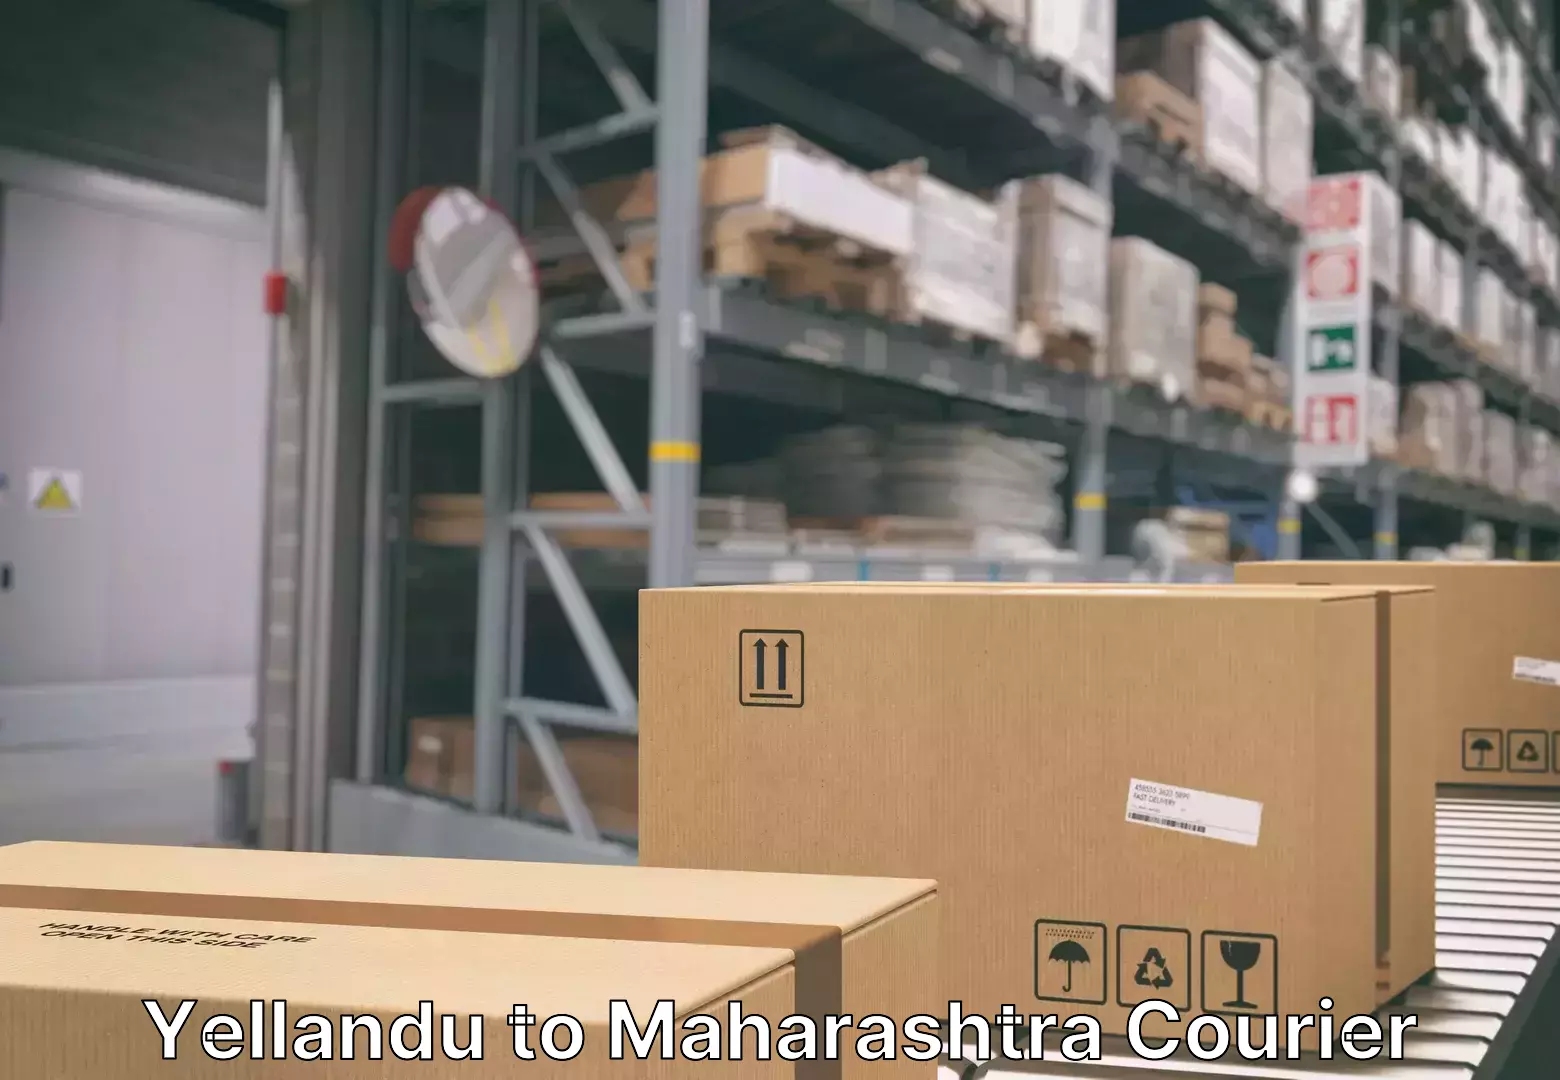 Trusted moving company Yellandu to Maharashtra